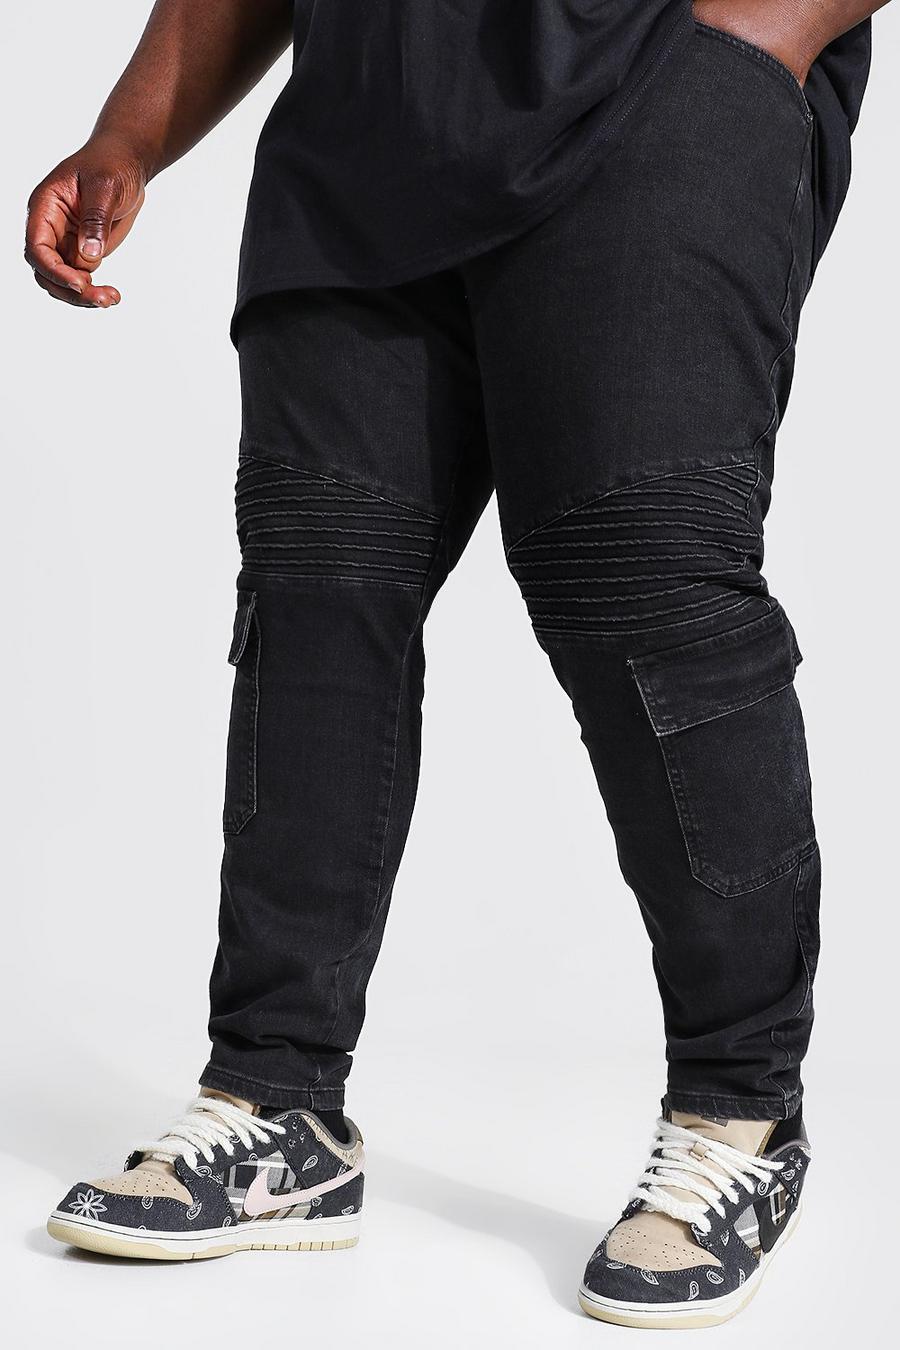 שחור דהוי סקיני ג'ינס אופנוענים בסגנון דגמ"ח נמתח, מידות גדולות image number 1